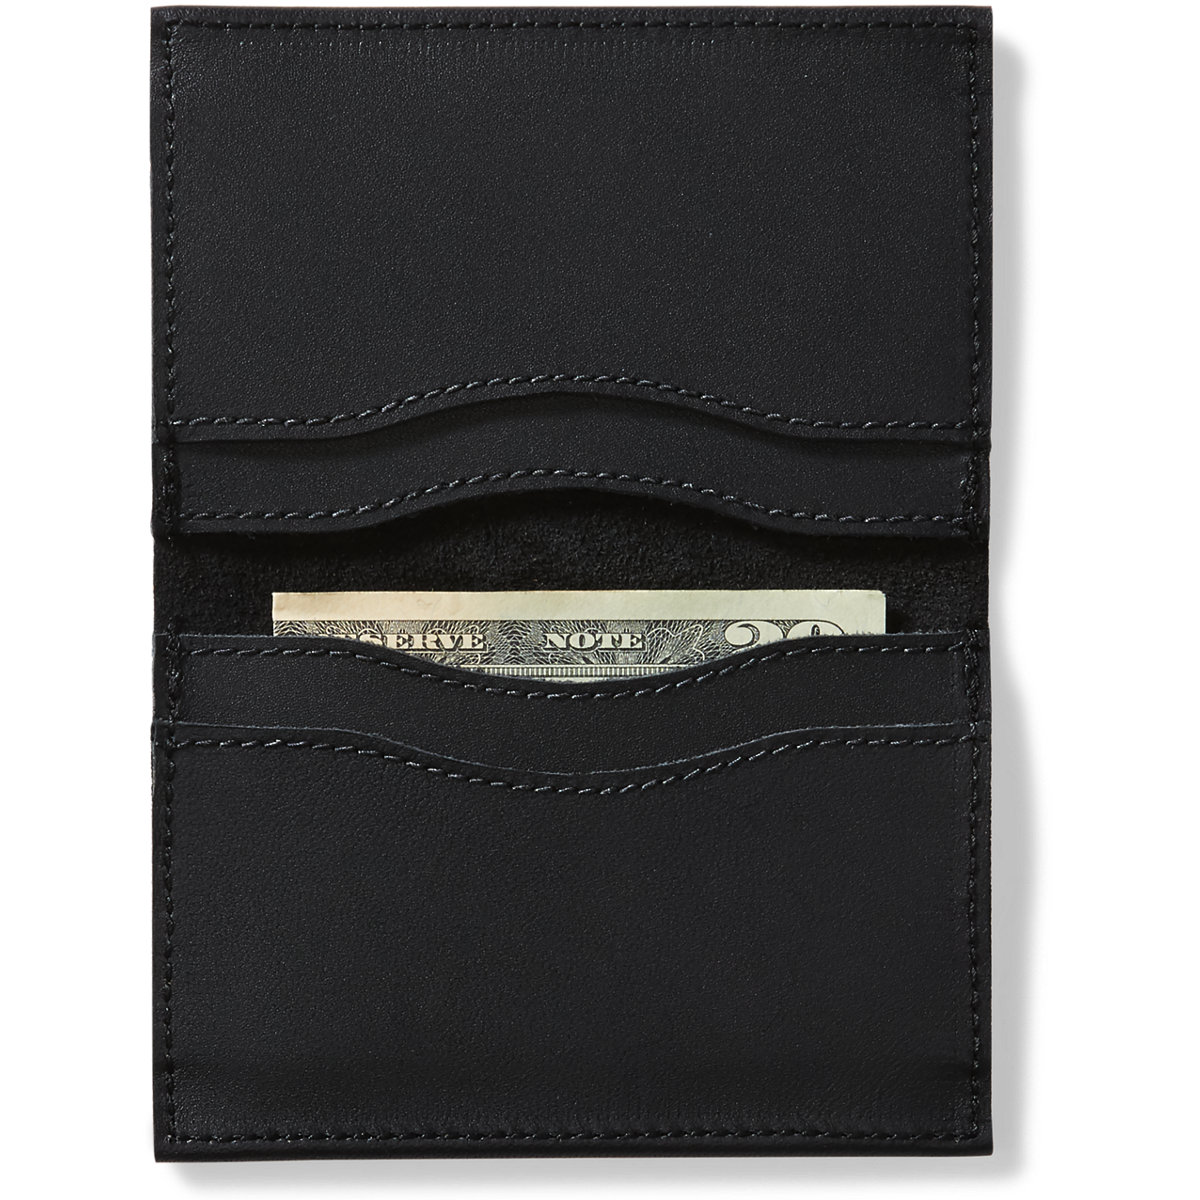 Danner Leather Wallet - Black